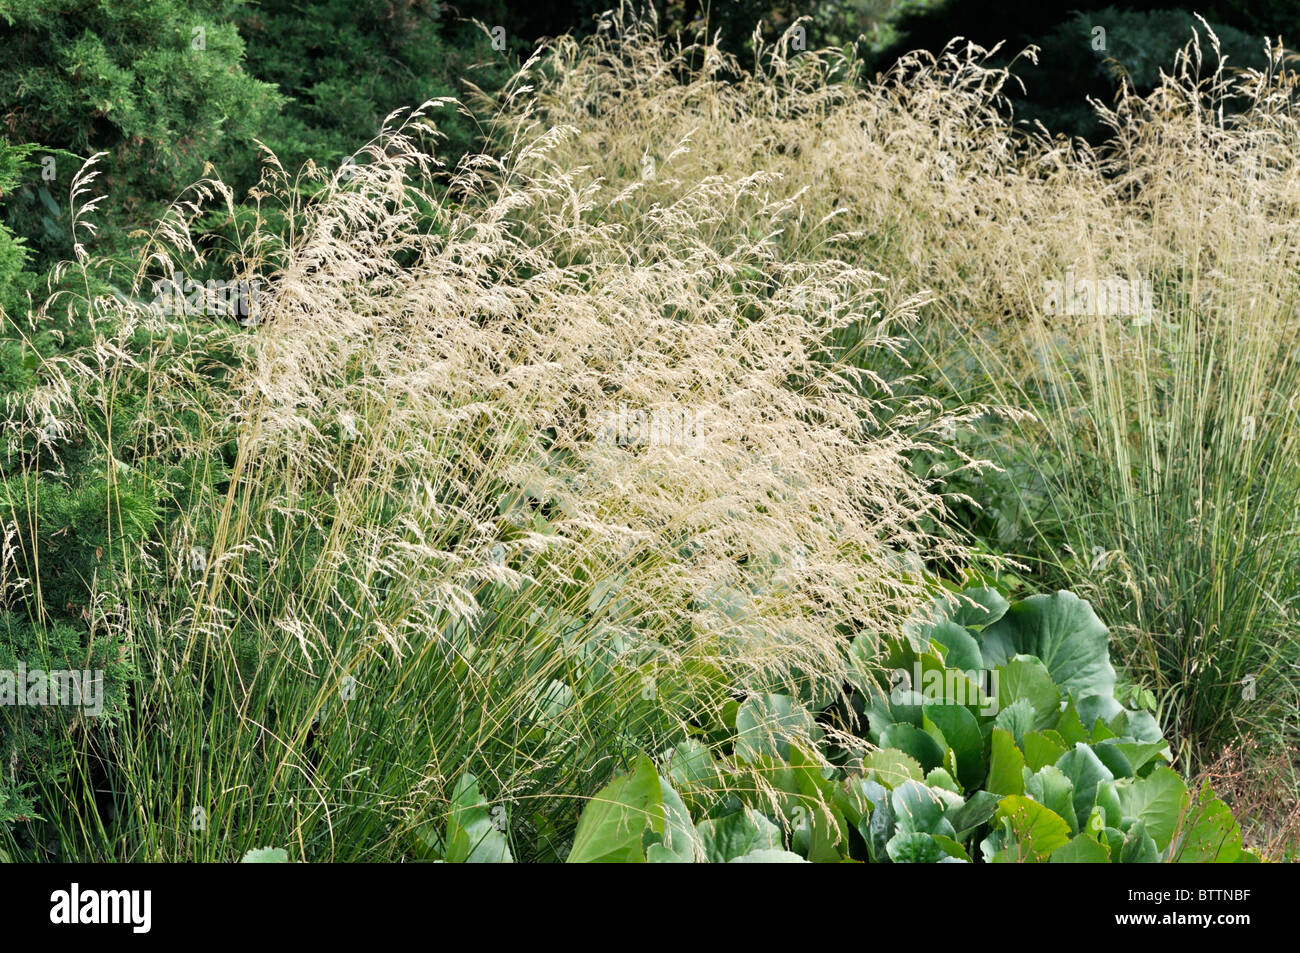 Tufted hair grass (Deschampsia cespitosa) Stock Photo